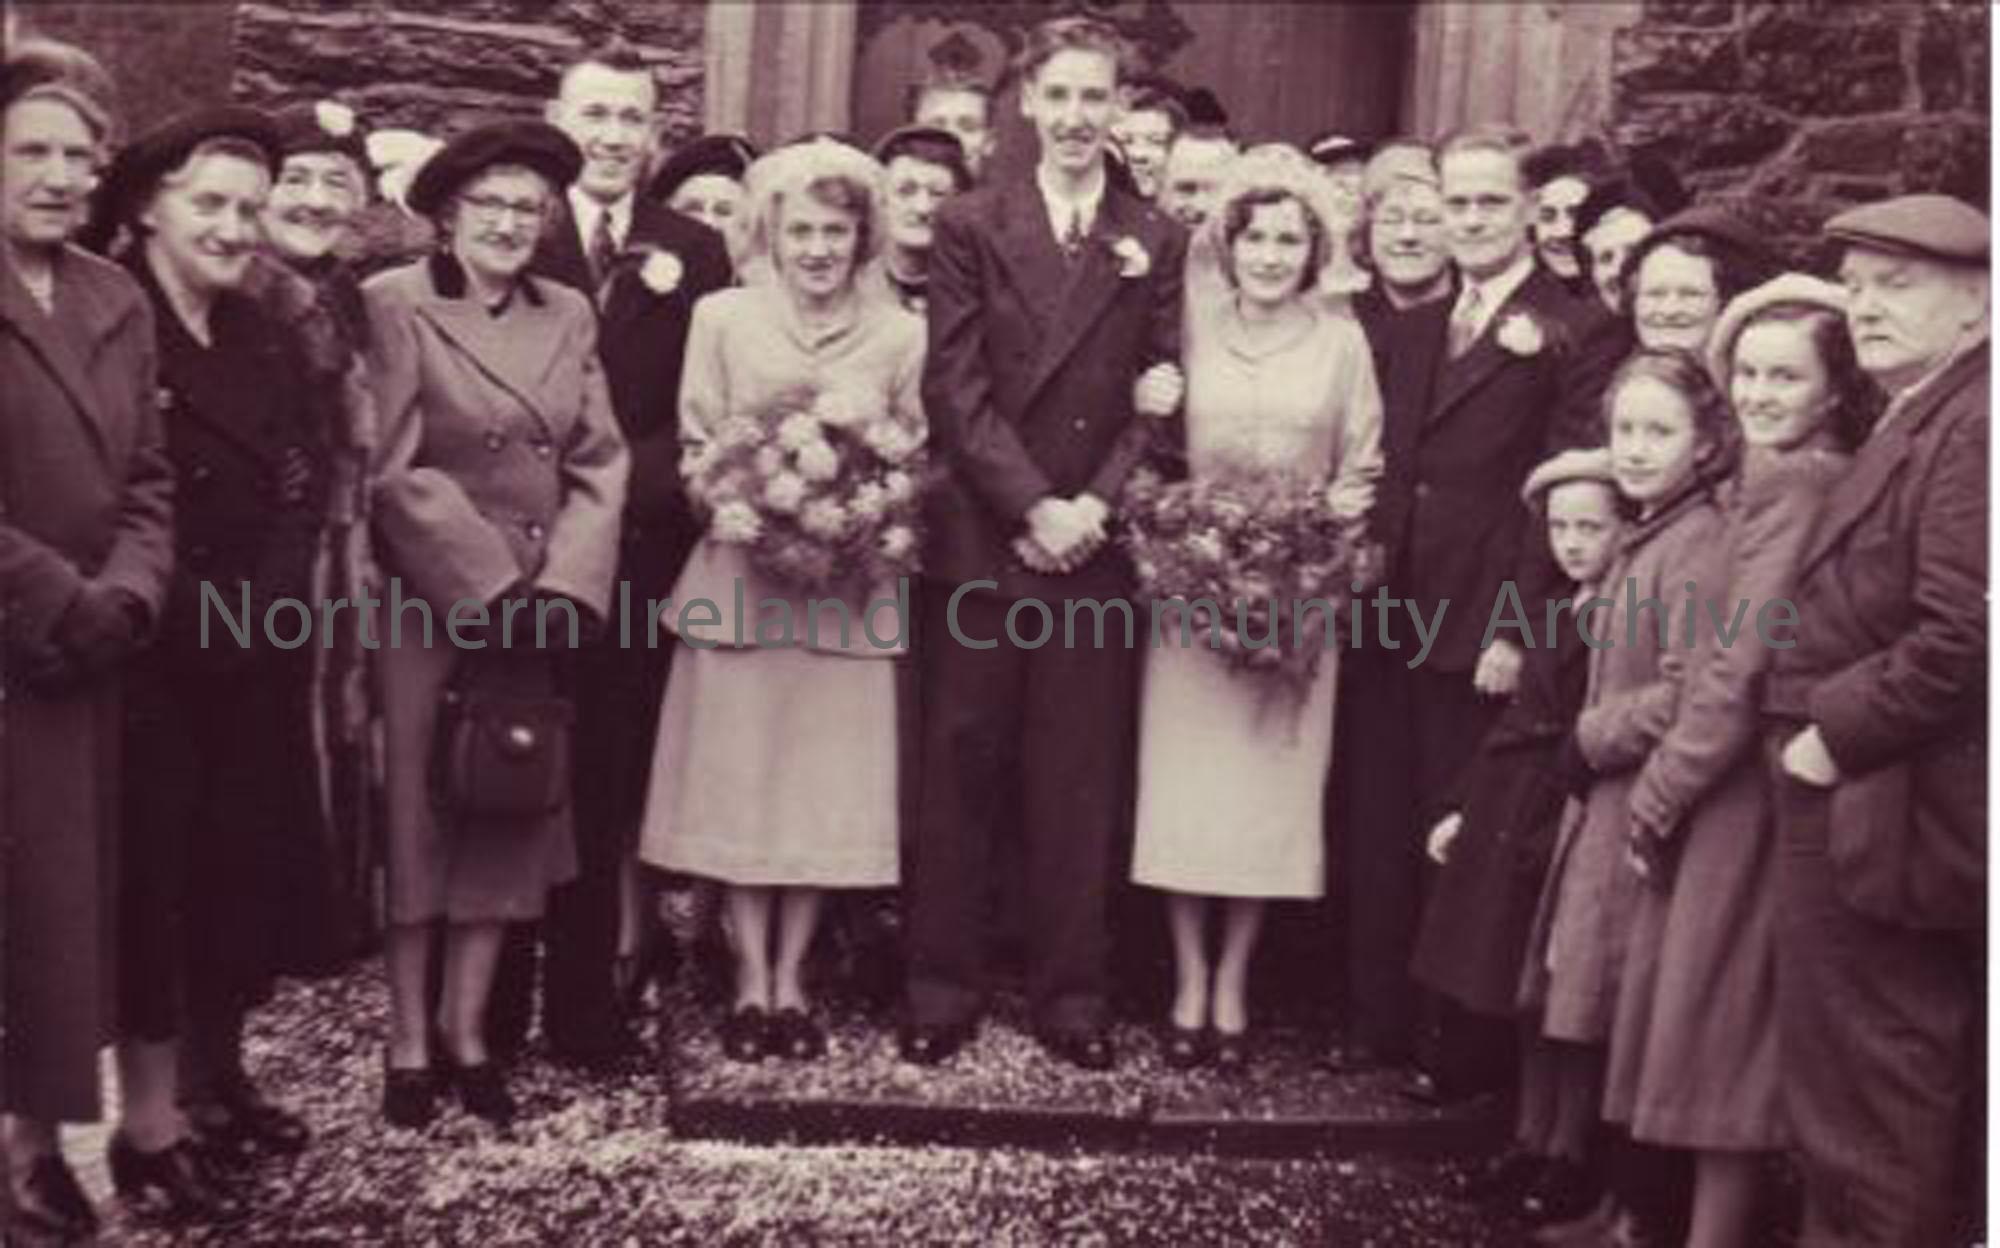 Ray and Barbara McKeever’s wedding at St Patrick’s Church at Ballymoney.